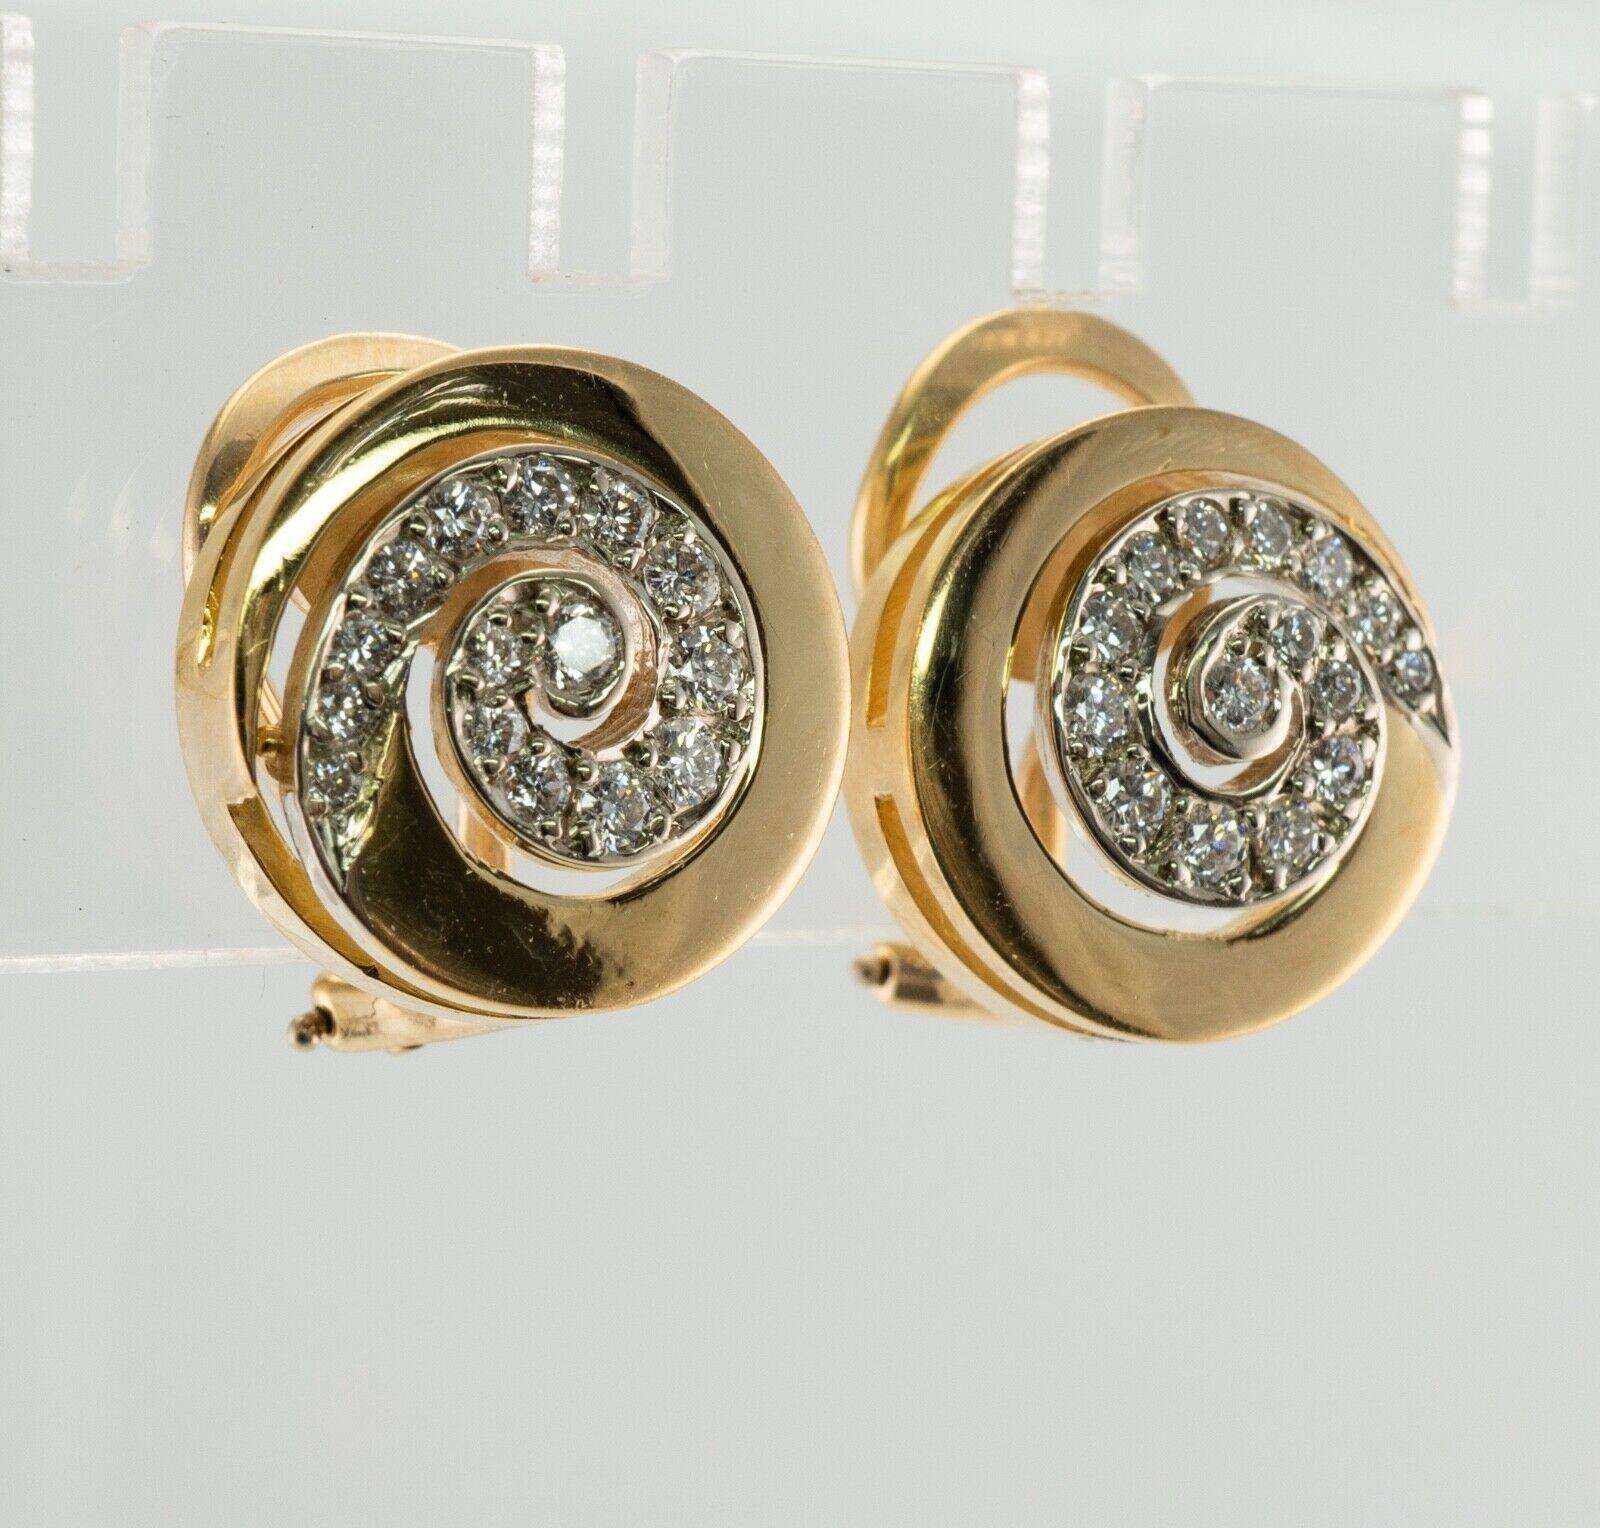 Wirbel Spirale Diamant Ohrringe Ivan & Co Clips 18K Gold
 
Diese Designer-Ohrringe werden von Ivan & Co. hergestellt.
Massives 18K Gelbgold
Jeder Ohrring ist mit 15 runden Diamanten von VVS2 Reinheit und H Farbe besetzt.
Das Gesamtgewicht der